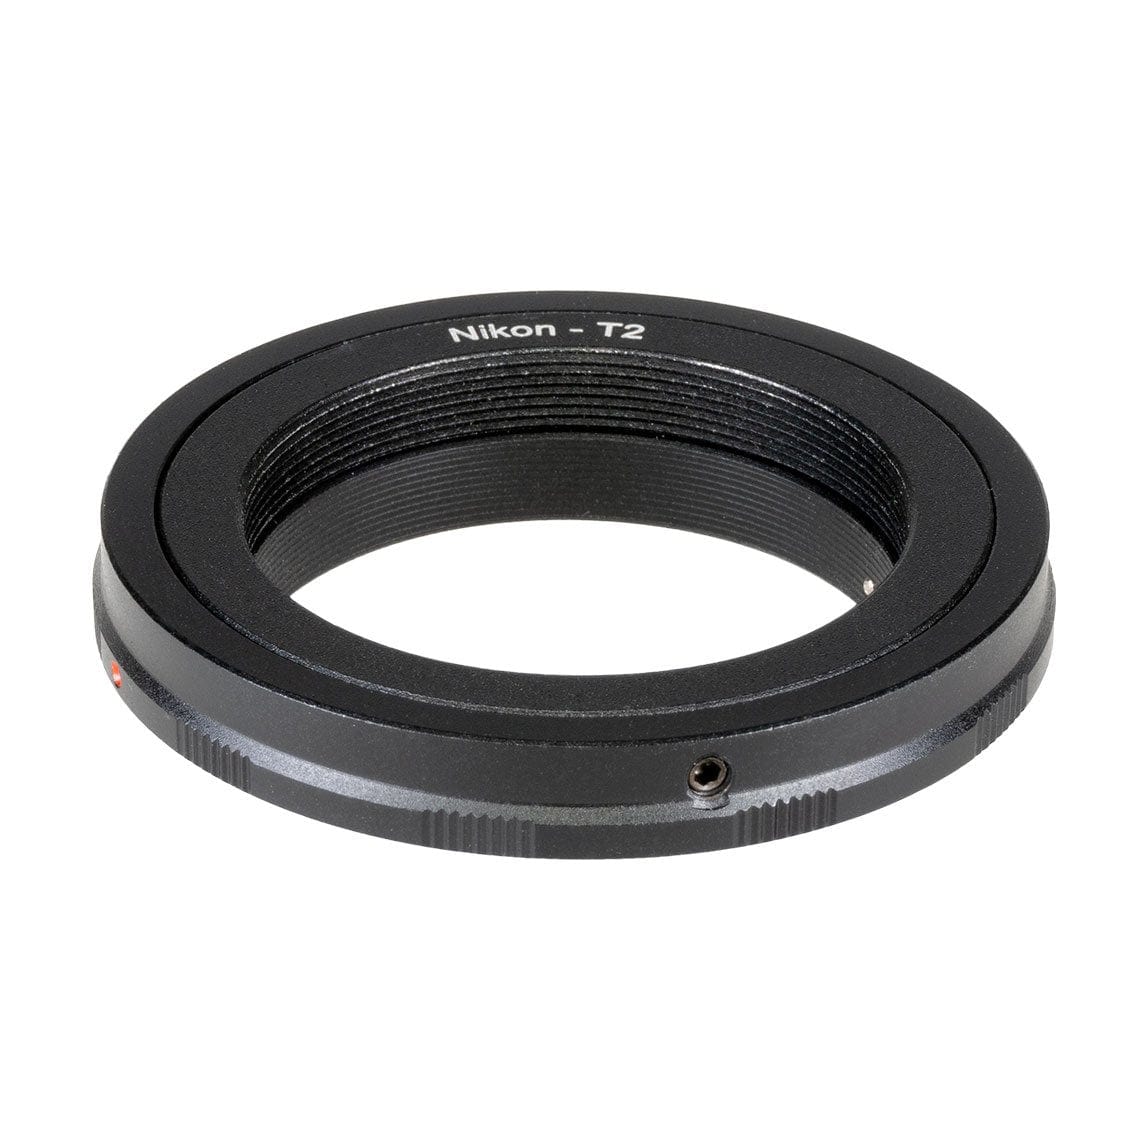 Explore Scientific Accessory Explore Scientific Nikon T2 Ring SLR - 49-20000